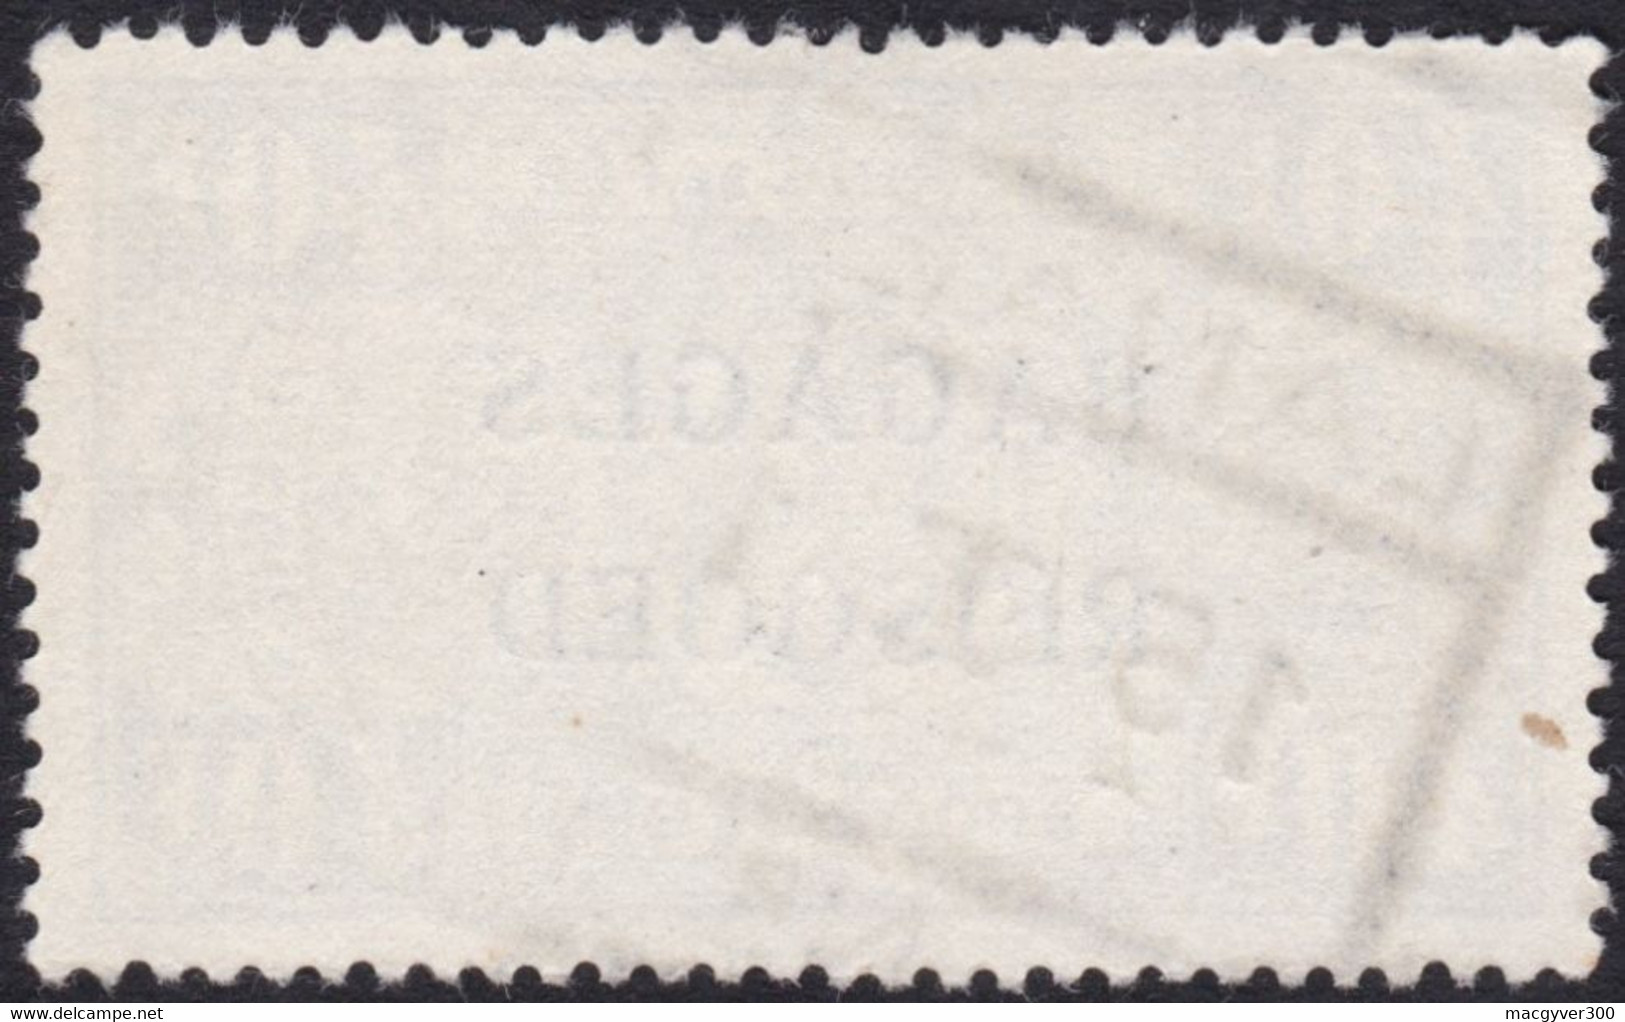 BELGIQUE, 1935, Timbres Bagages ( COB BA22) - Reisgoedzegels [BA]